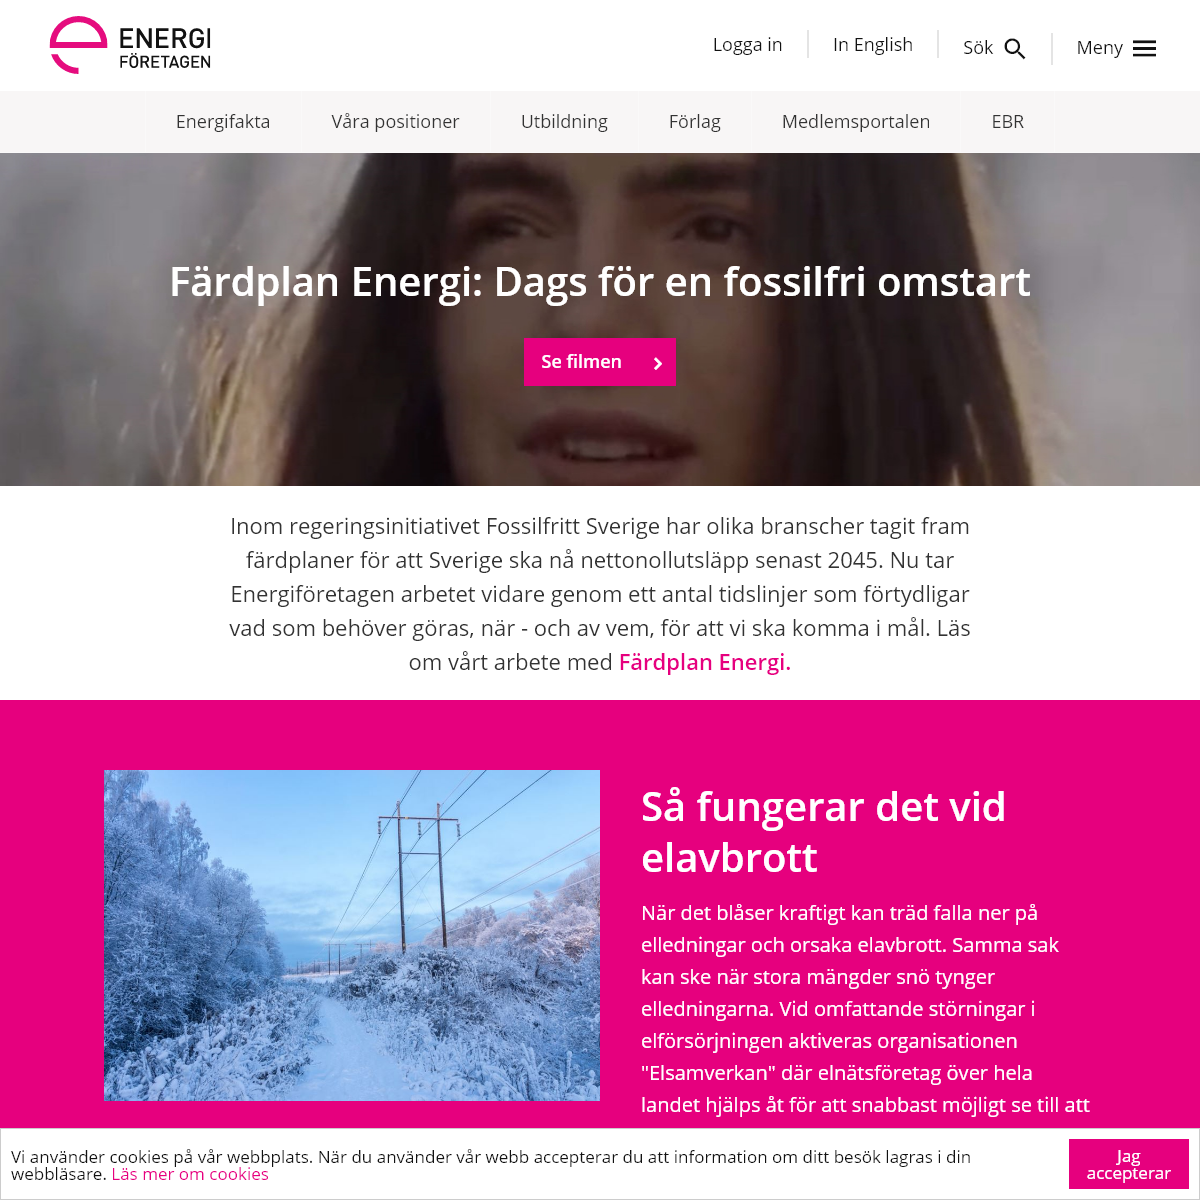 A complete backup of energiforetagen.se